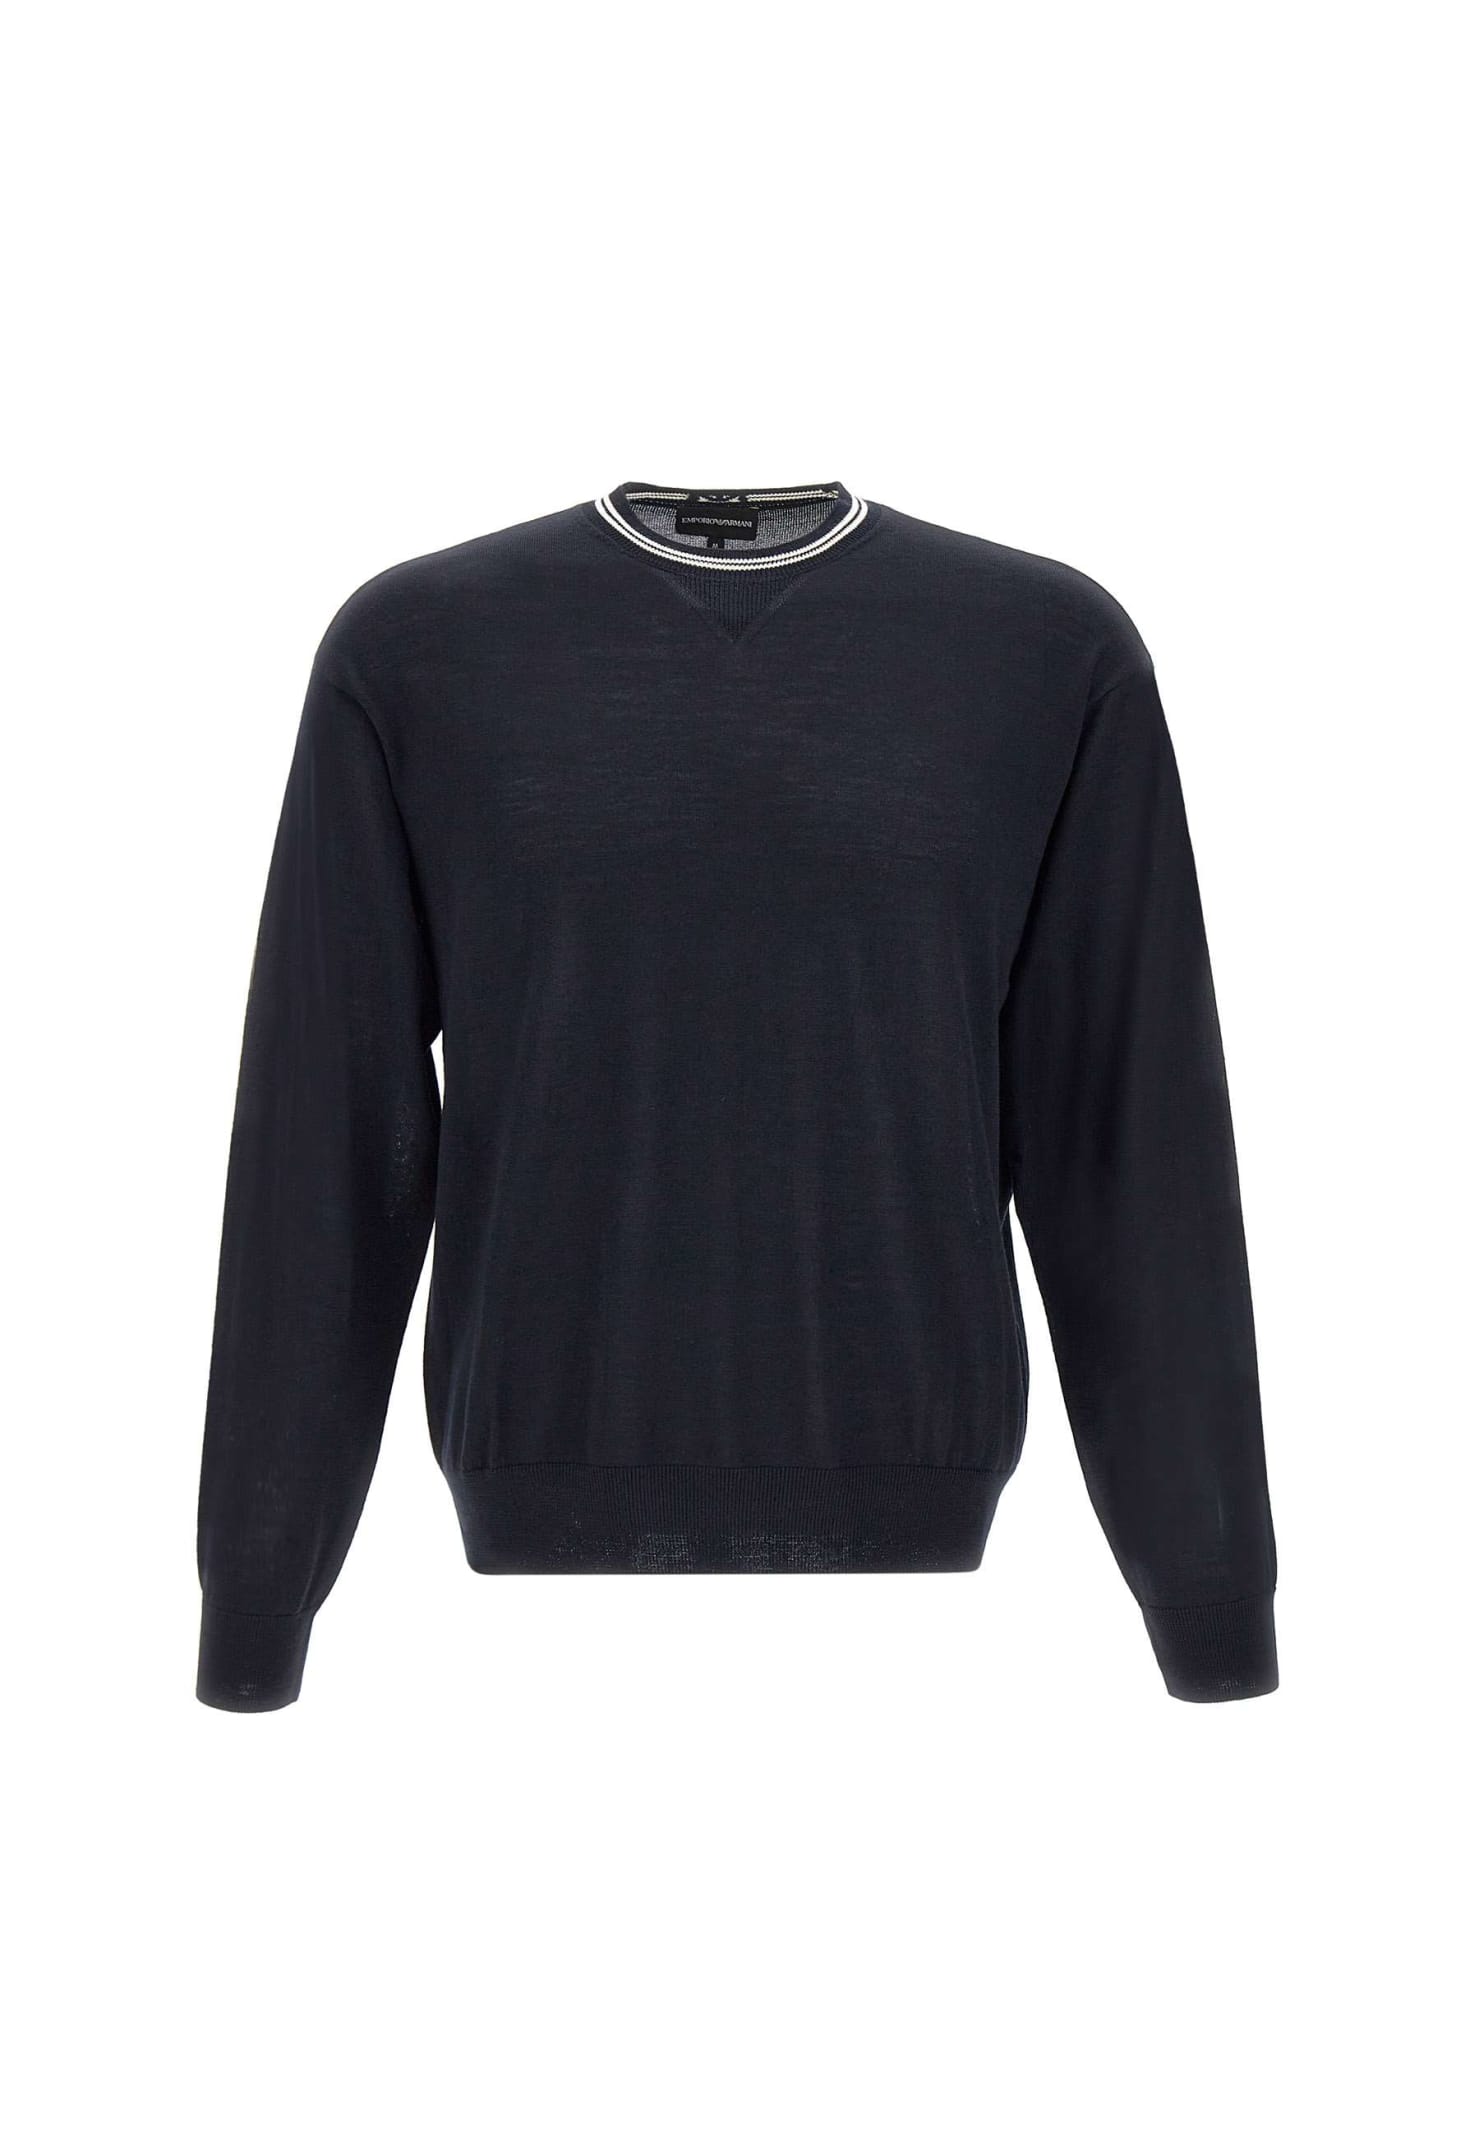 Emporio Armani Wool Sweater In Black